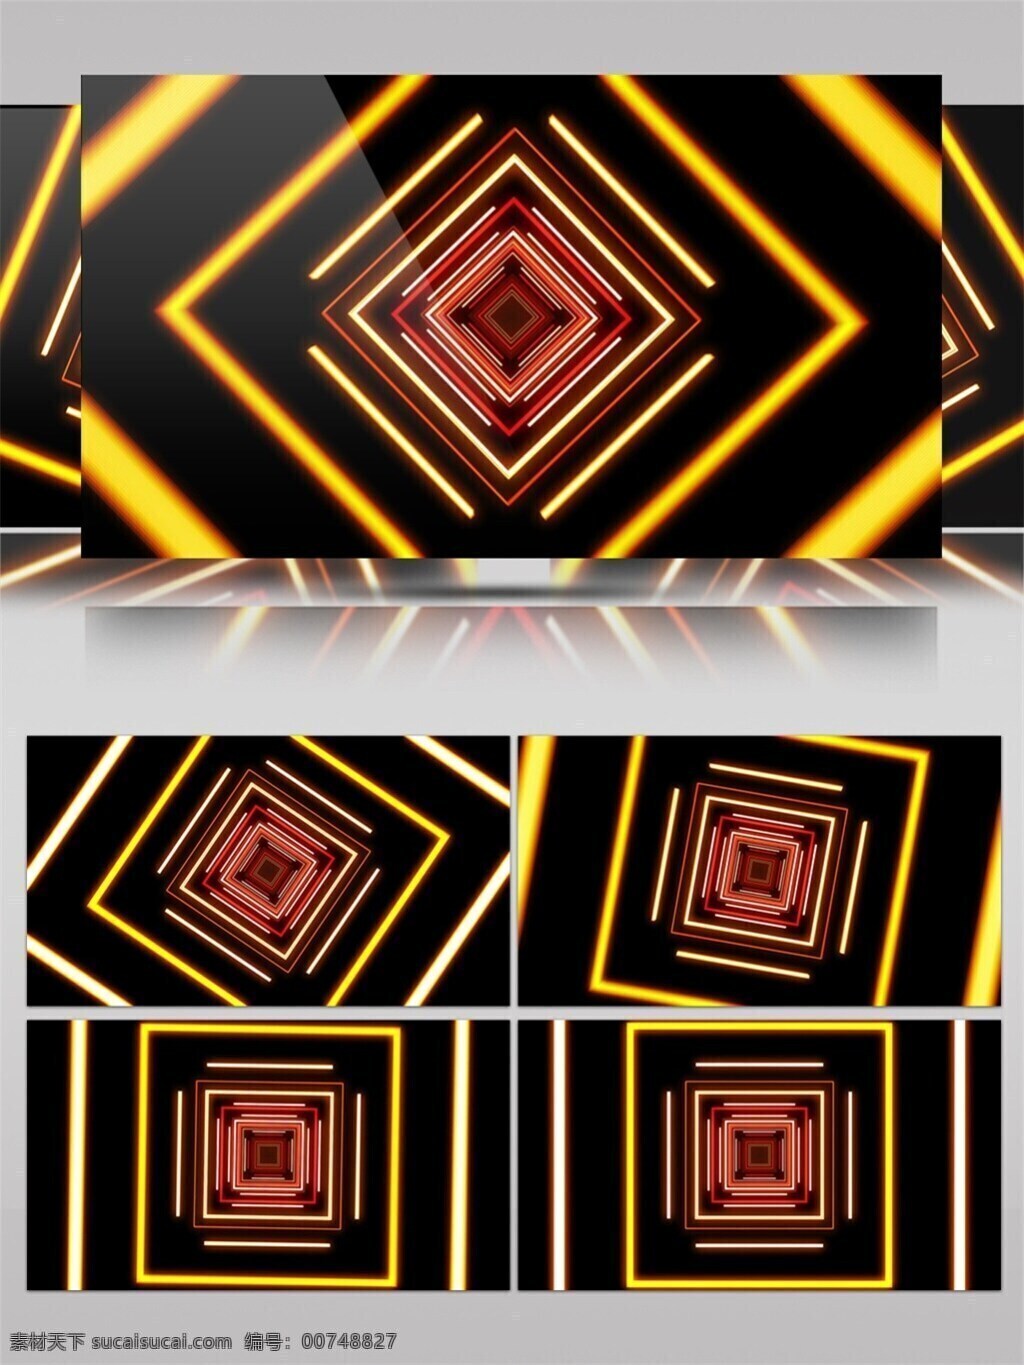 黄光 回旋 动态 视频 3d视频素材 高清视频素材 黄红色光线 几何回旋 特效视频素材 正方形方格